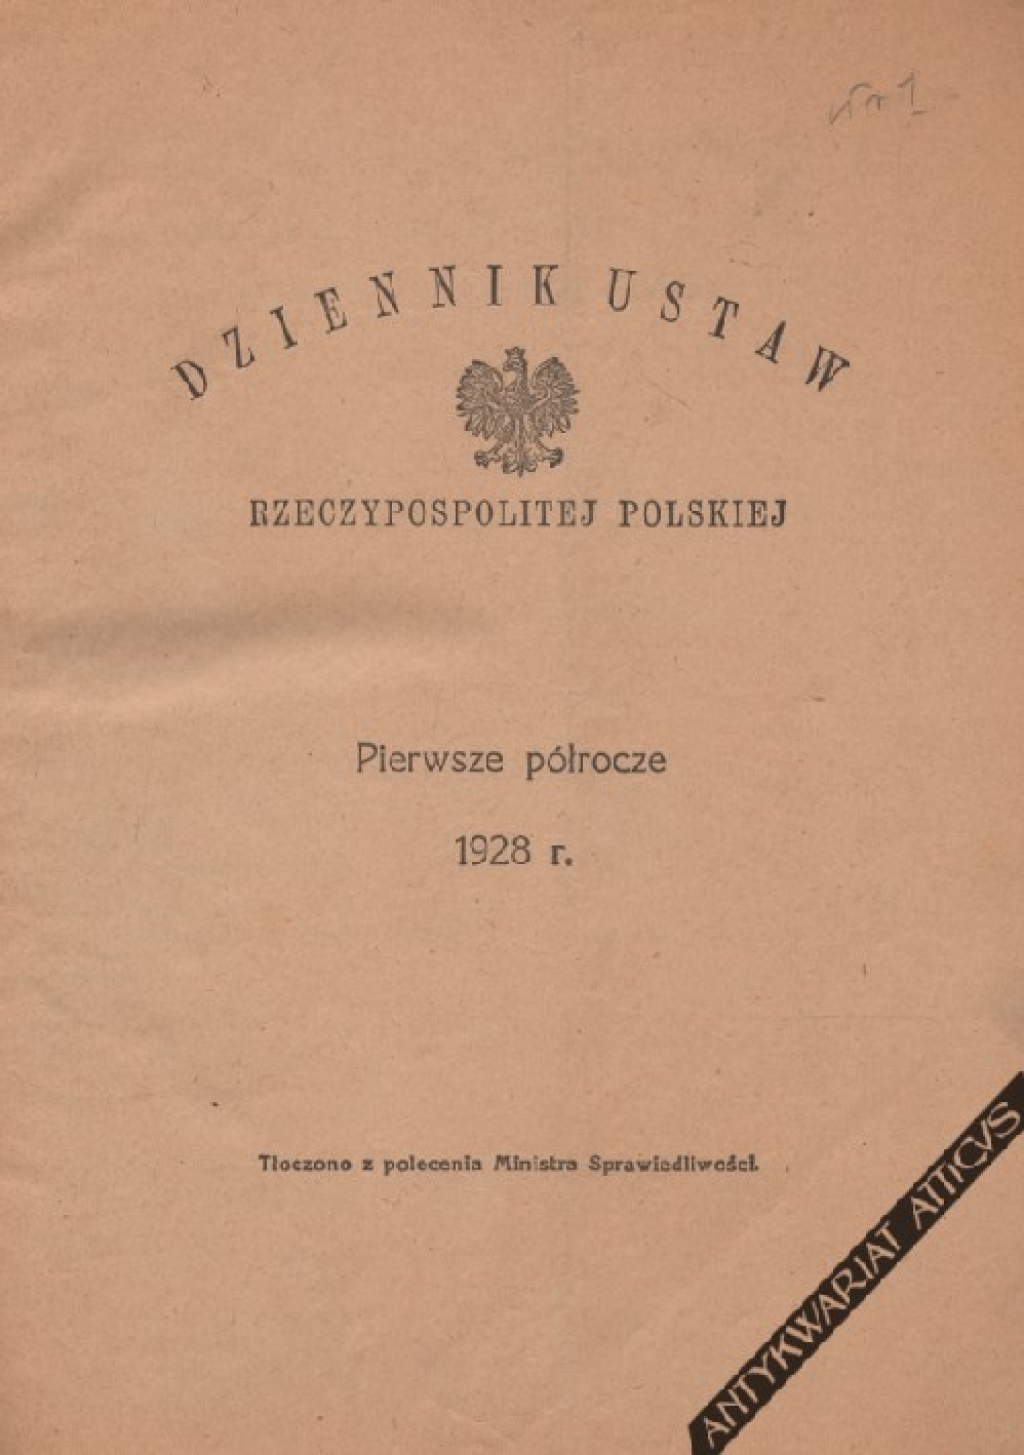 Dziennik ustaw Rzeczpospolitej Polskiej, pierwsze półrocze 1928 r. Nr 1-66 [4 stycznia 30 czerwca 1928 r.]